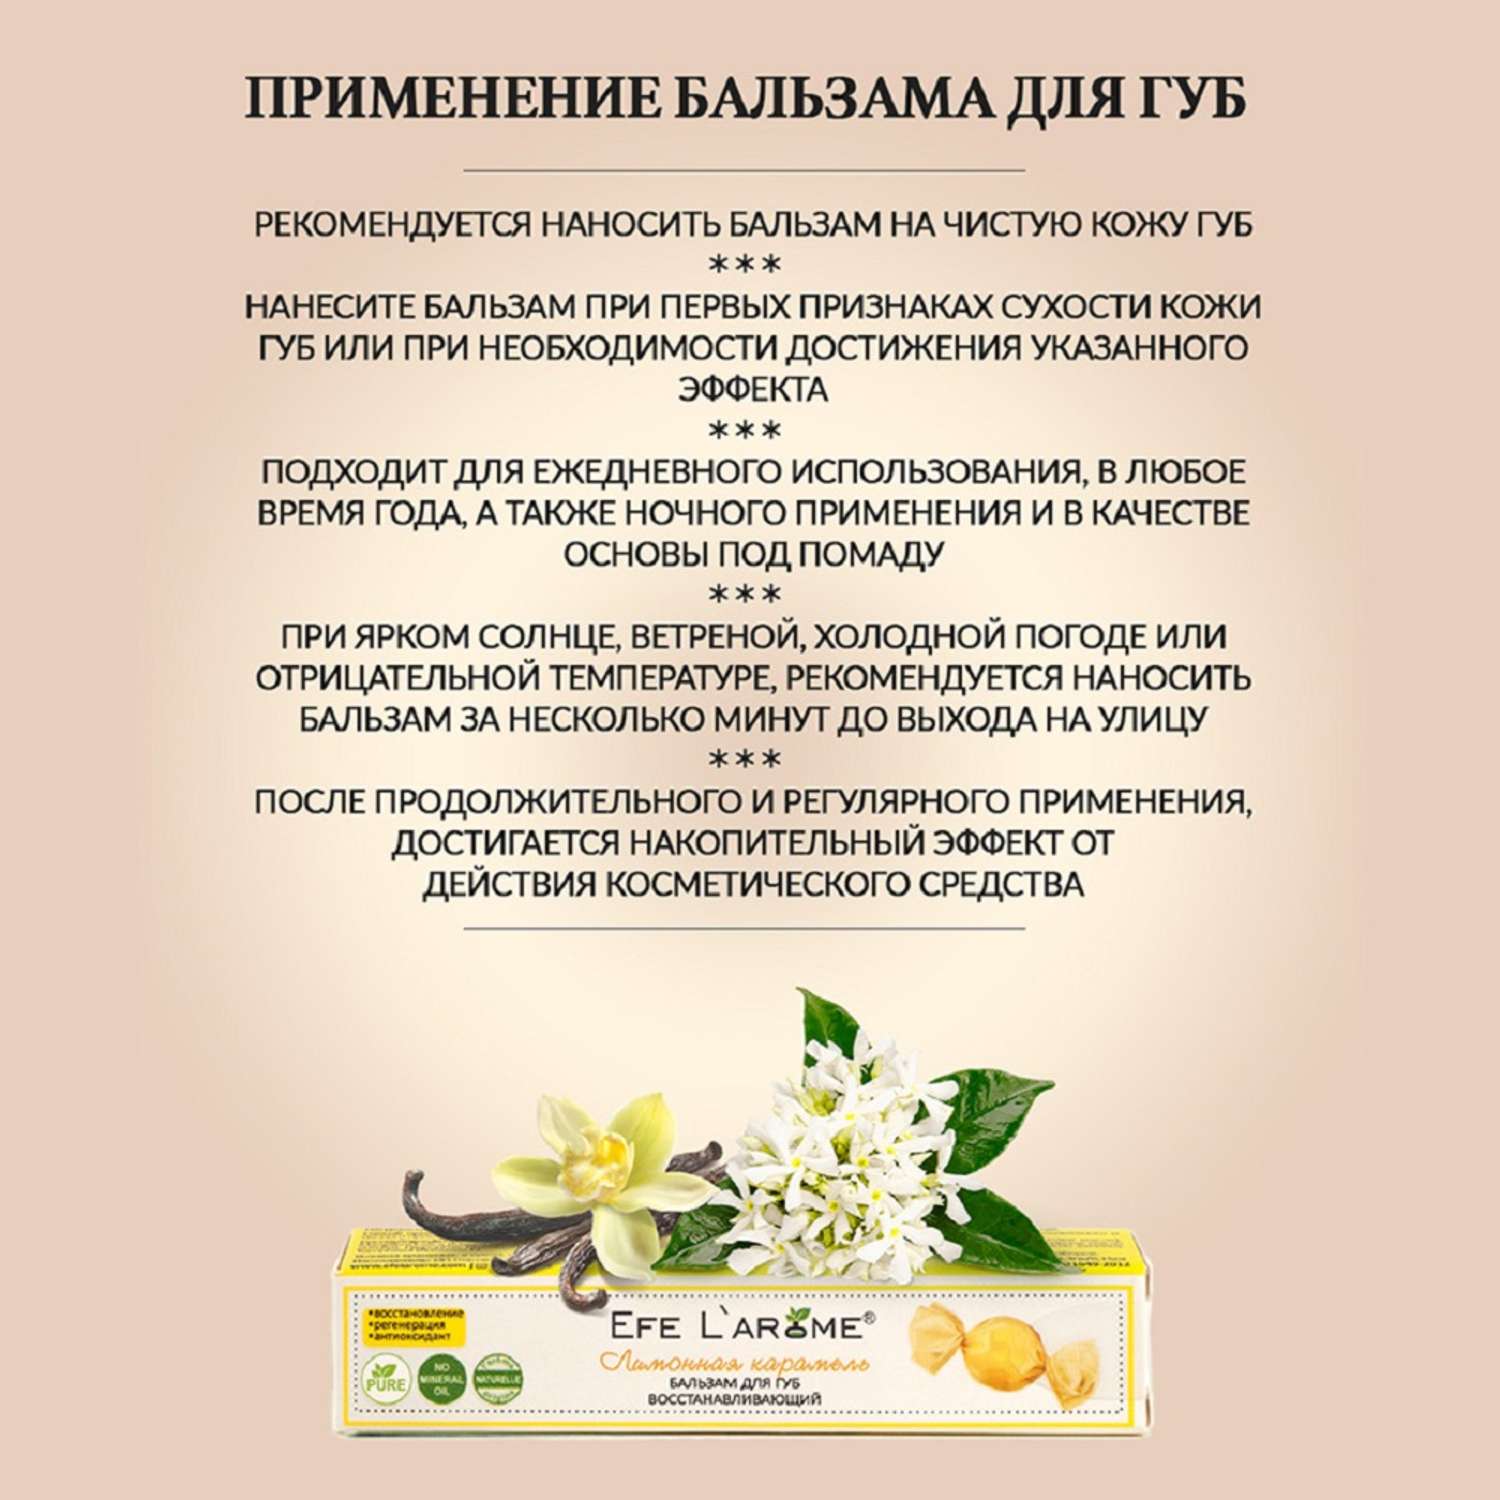 Бальзам для губ Efe L’arome Лимонная карамель восстановление с эфирным маслом литсеи и ванили - фото 7